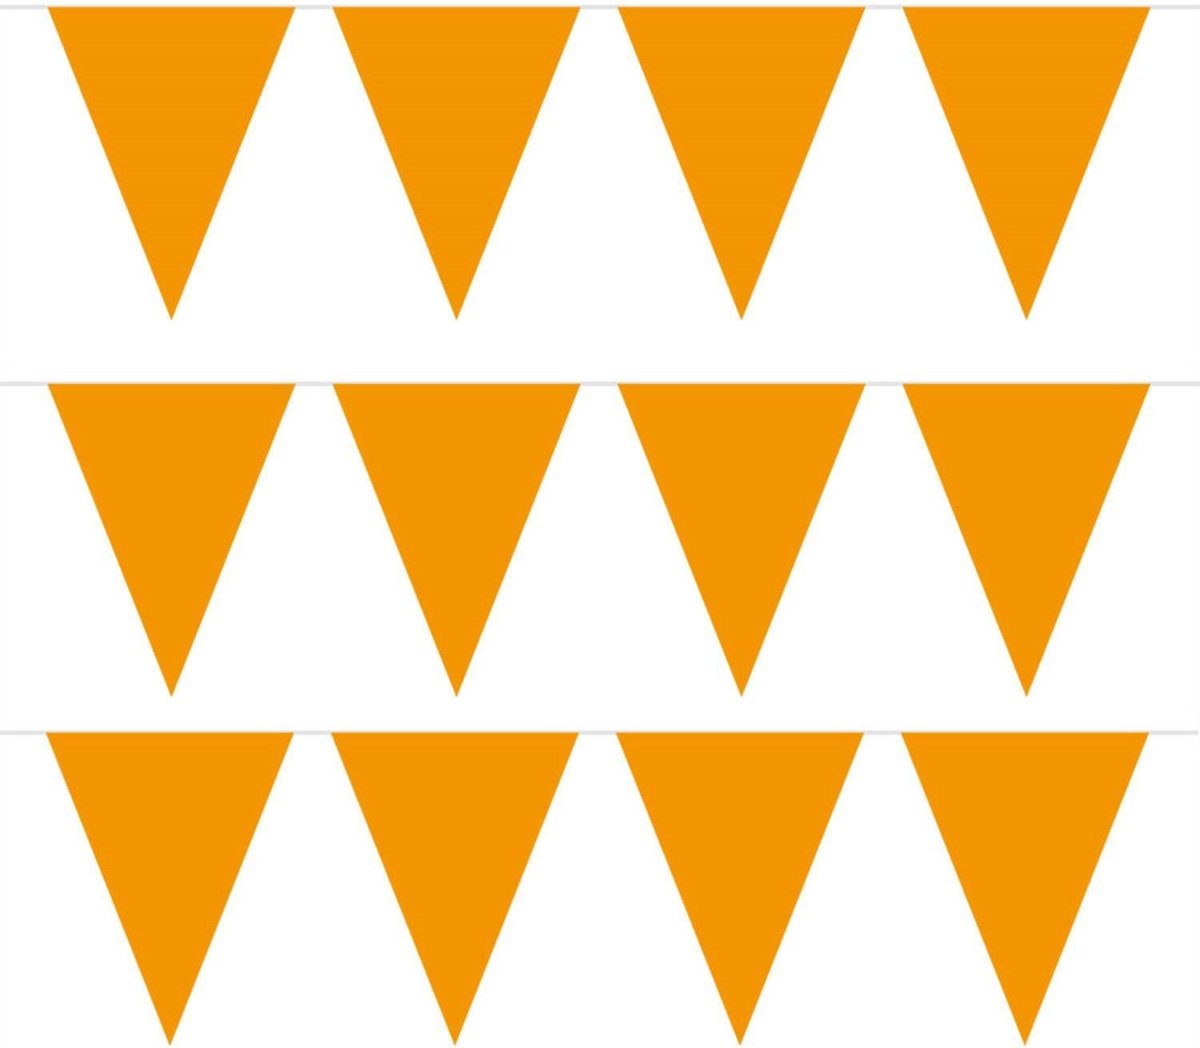 Pakket van 4x stuks oranje vlaggenlijnen slinger 5 meter - EK/WK - Koningsdag oranje supporter artikelen